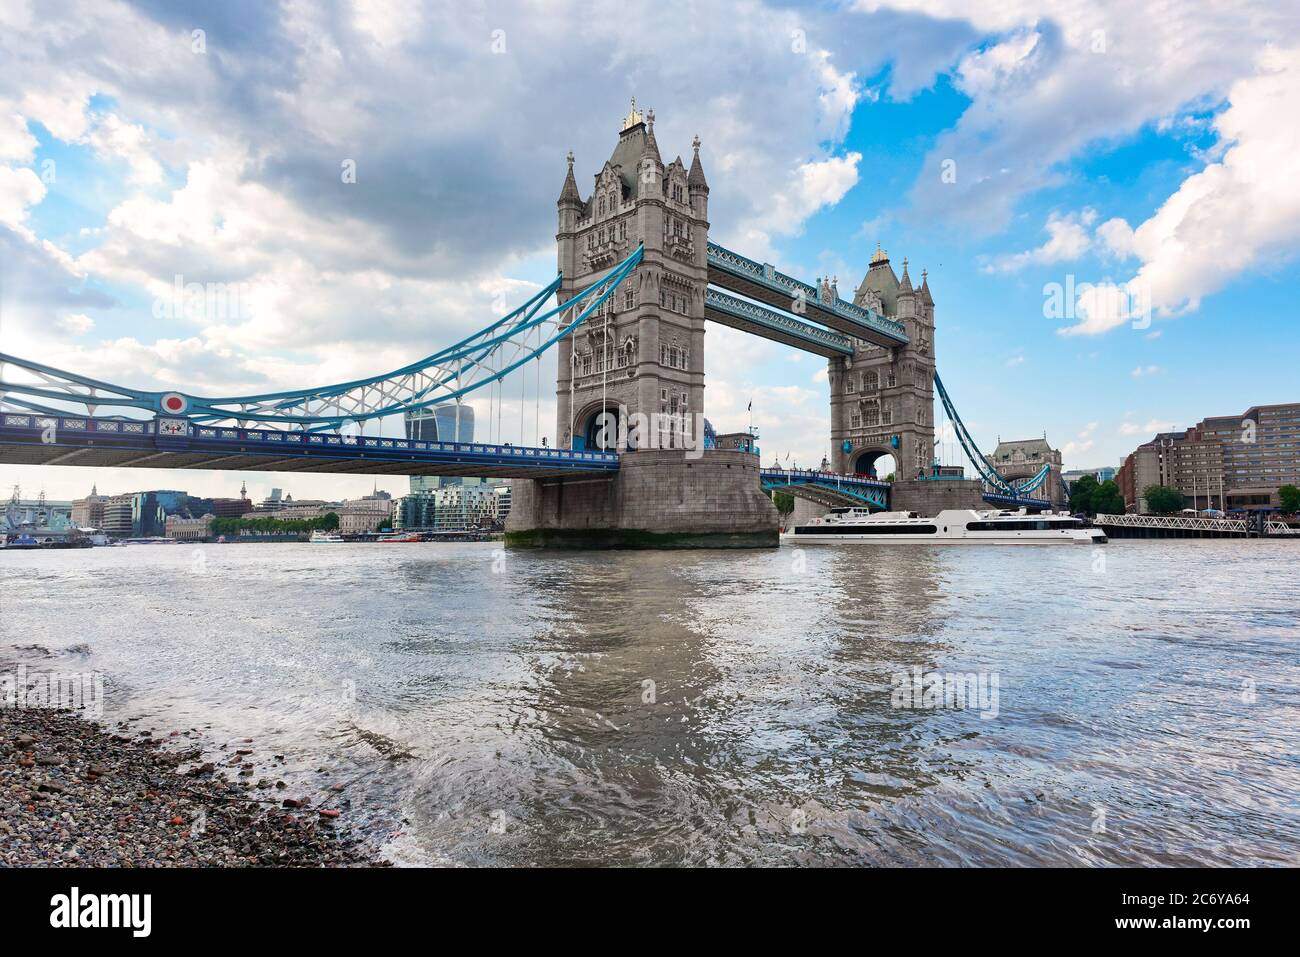 Die berühmte Tower Bridge in London am späten Nachmittag. Die Brücke überquert die Themse in der Nähe des Tower of London Stockfoto